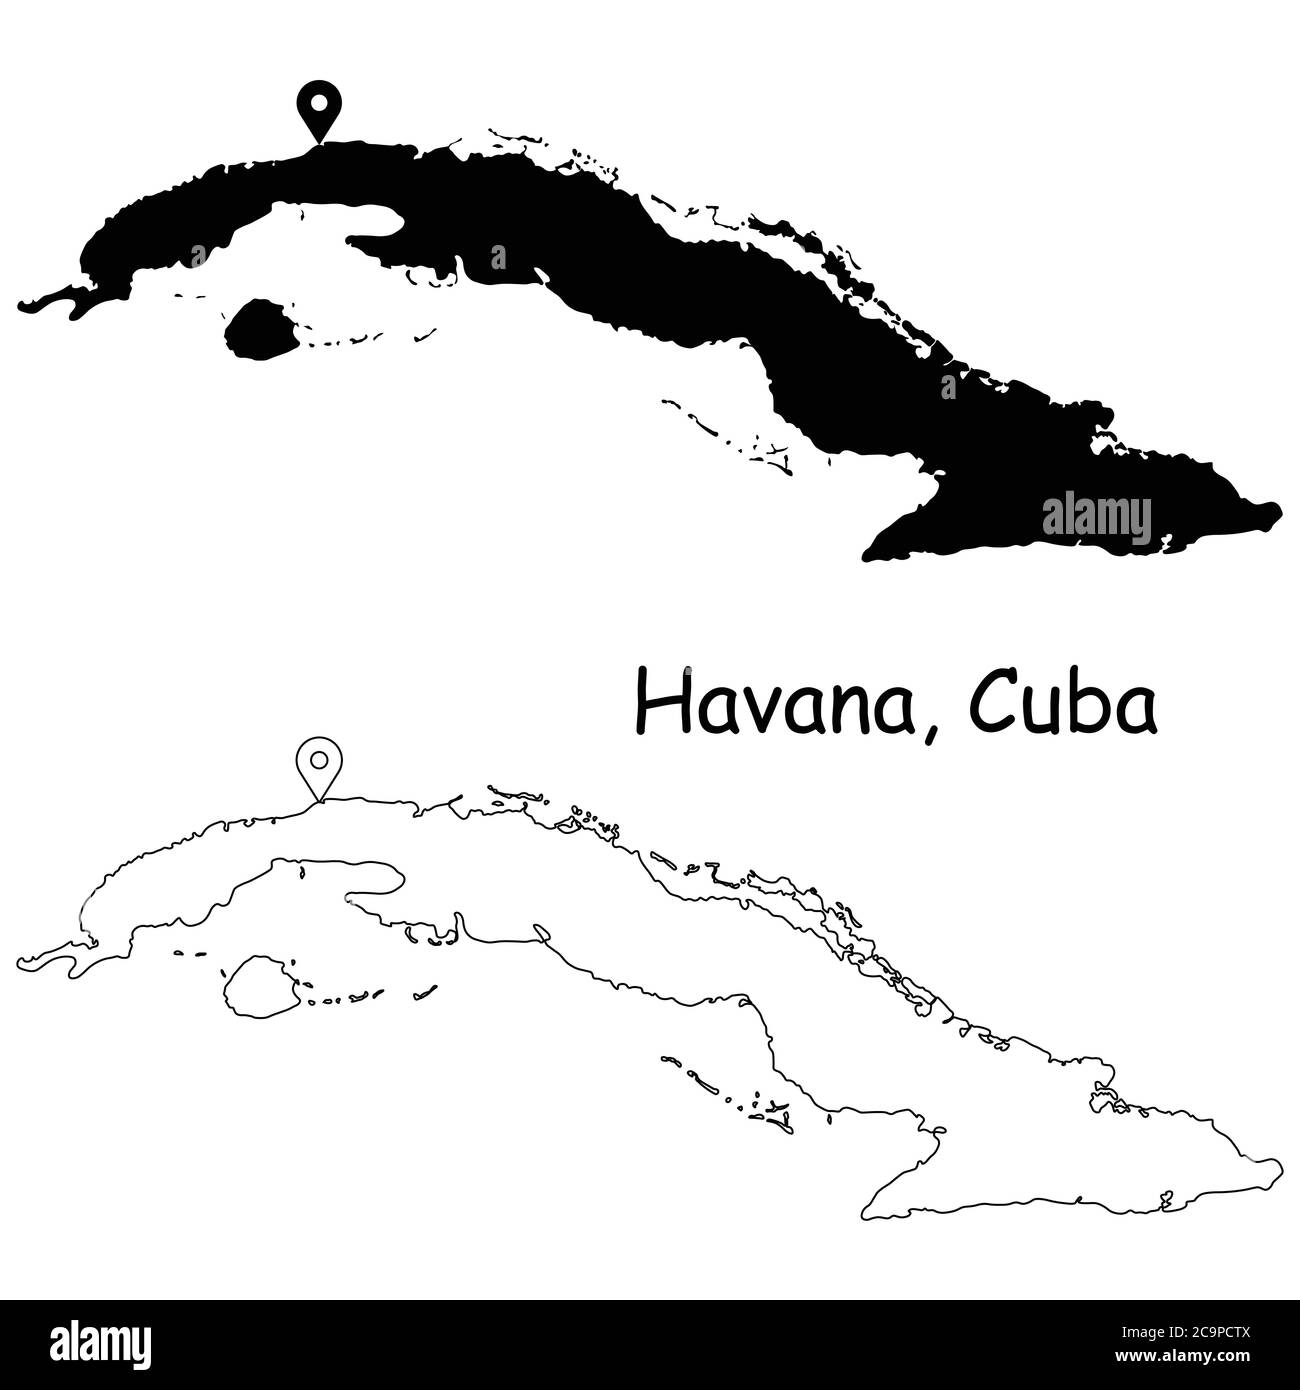 La Havane Cuba. Carte détaillée du pays avec broche d'emplacement sur Capital City. Cartes silhouettes et vectorielles noires isolées sur fond blanc. Vecteur EPS Illustration de Vecteur